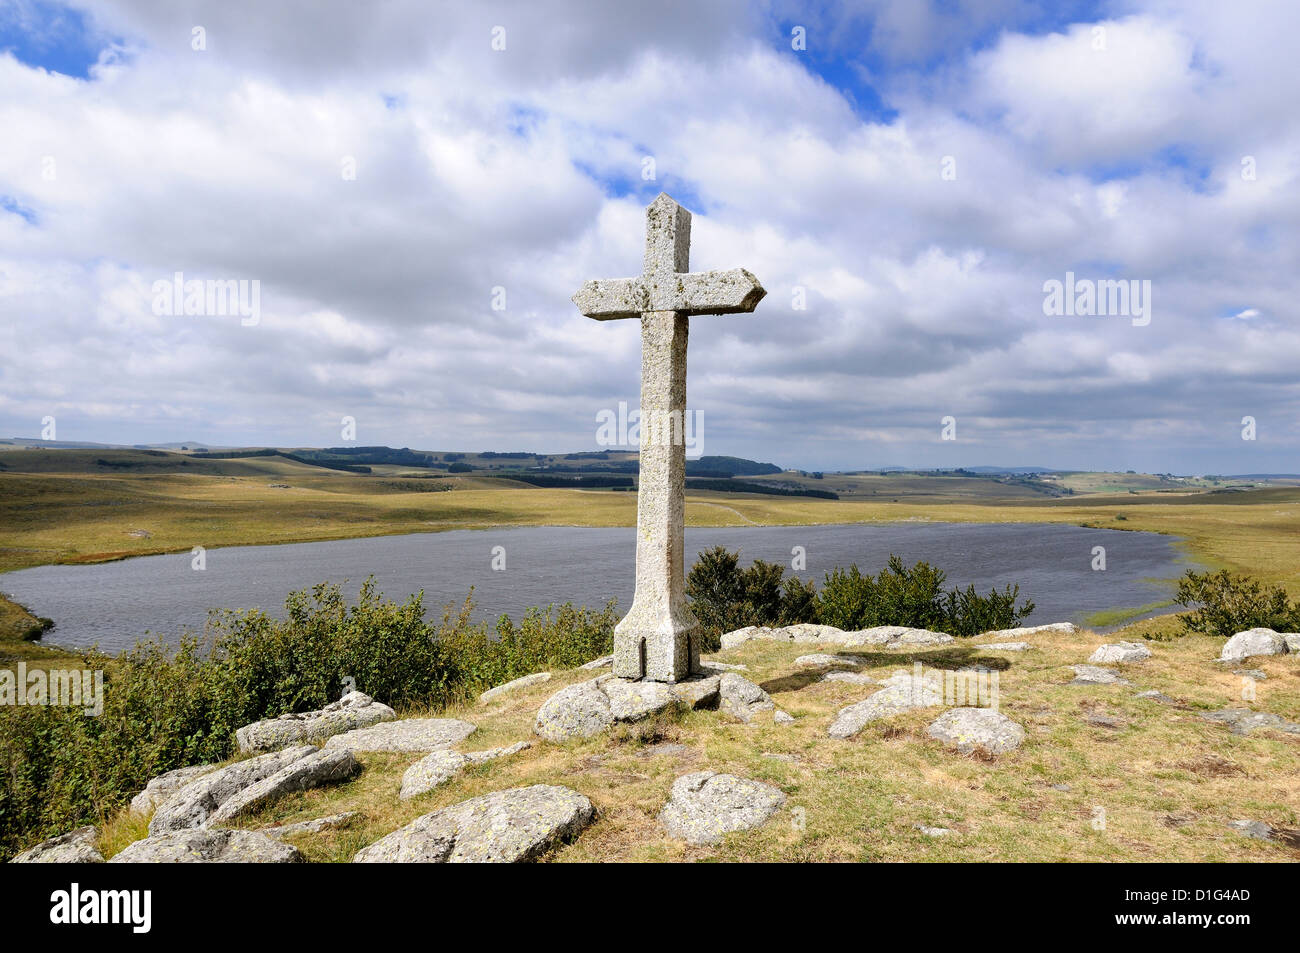 Kreuz am St Andeol See auf Way of St. James in Lozère, Aubrac, Frankreich, Europa - Pilgerweg nach Santiago De Compostela Stockfoto